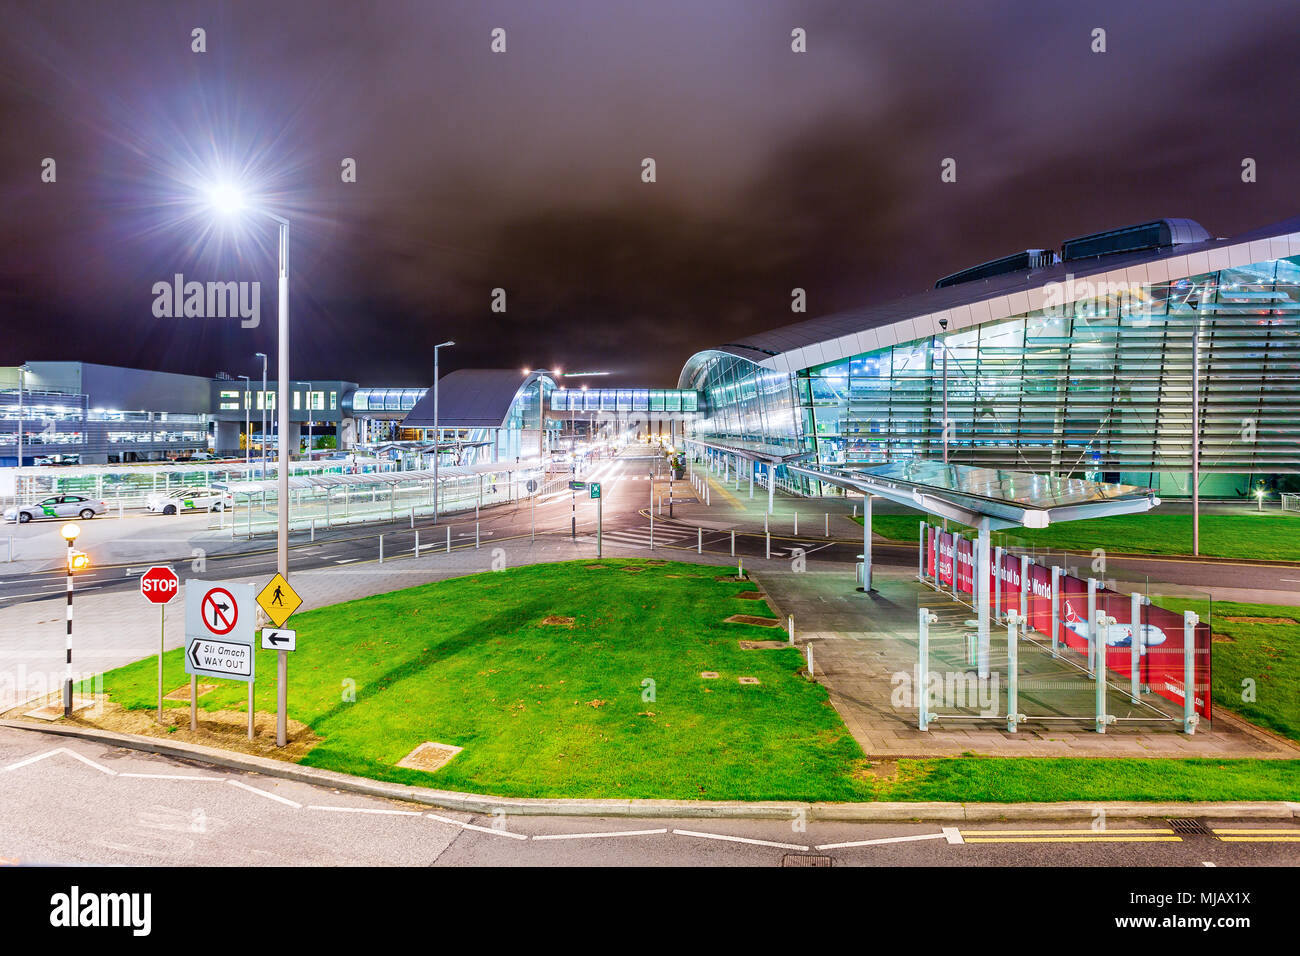 L'aéroport de Dublin, le Terminal 2, de l'Irlande. Longue exposition. La photographie de nuit. Banque D'Images